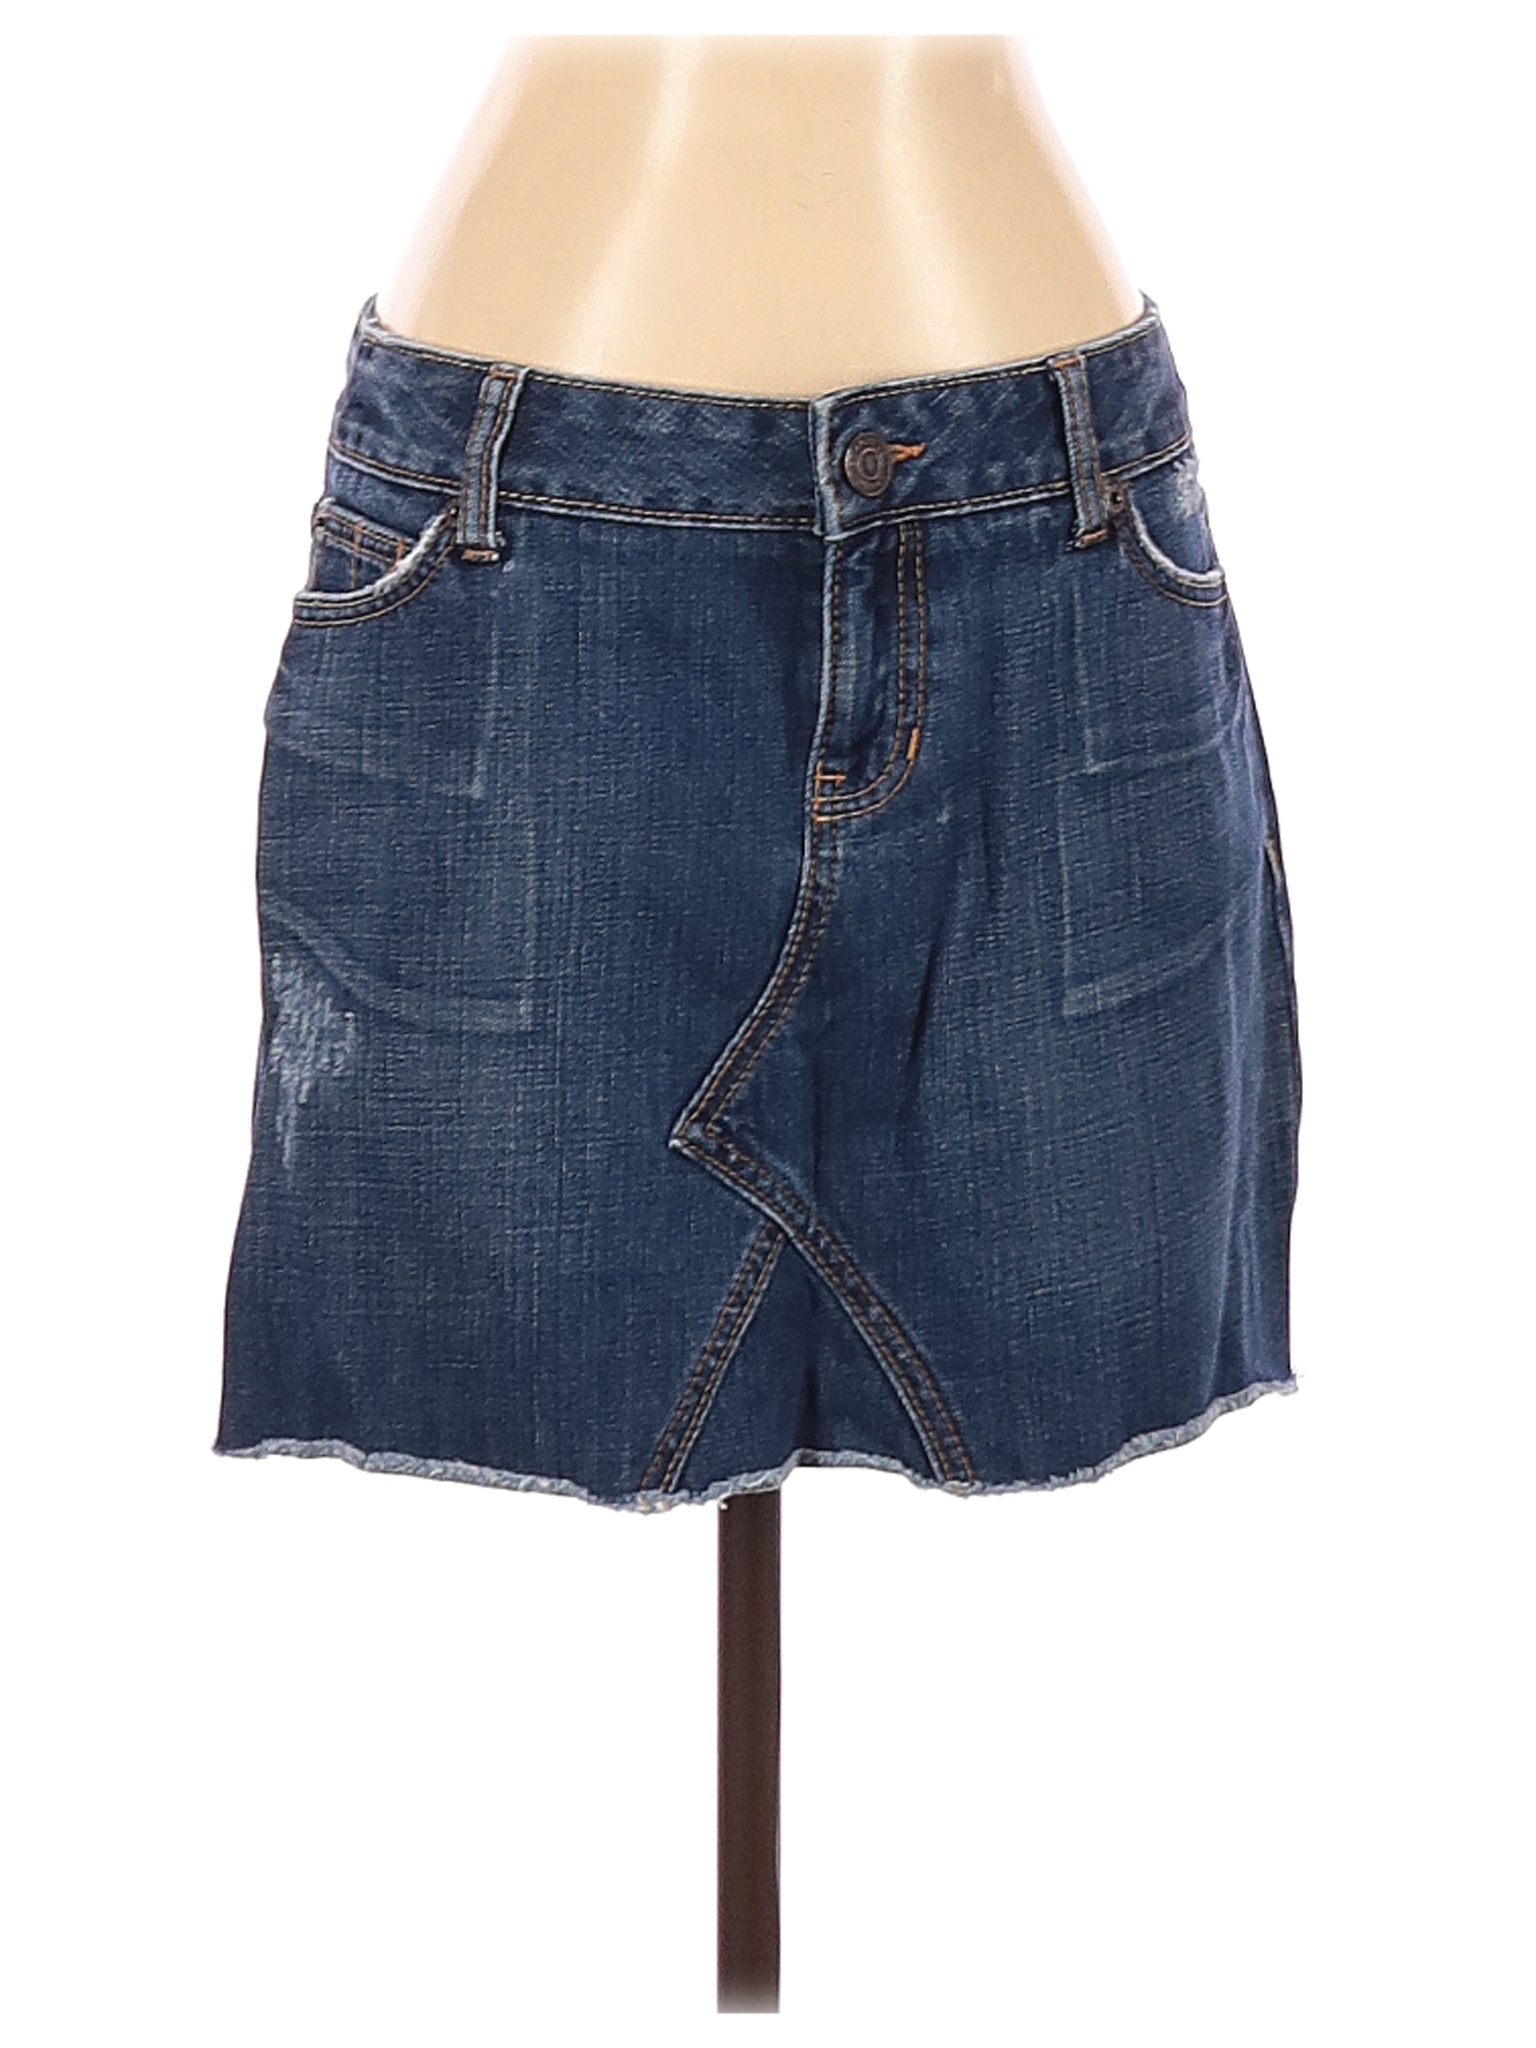 Gap Women Blue Denim Skirt 2 | eBay